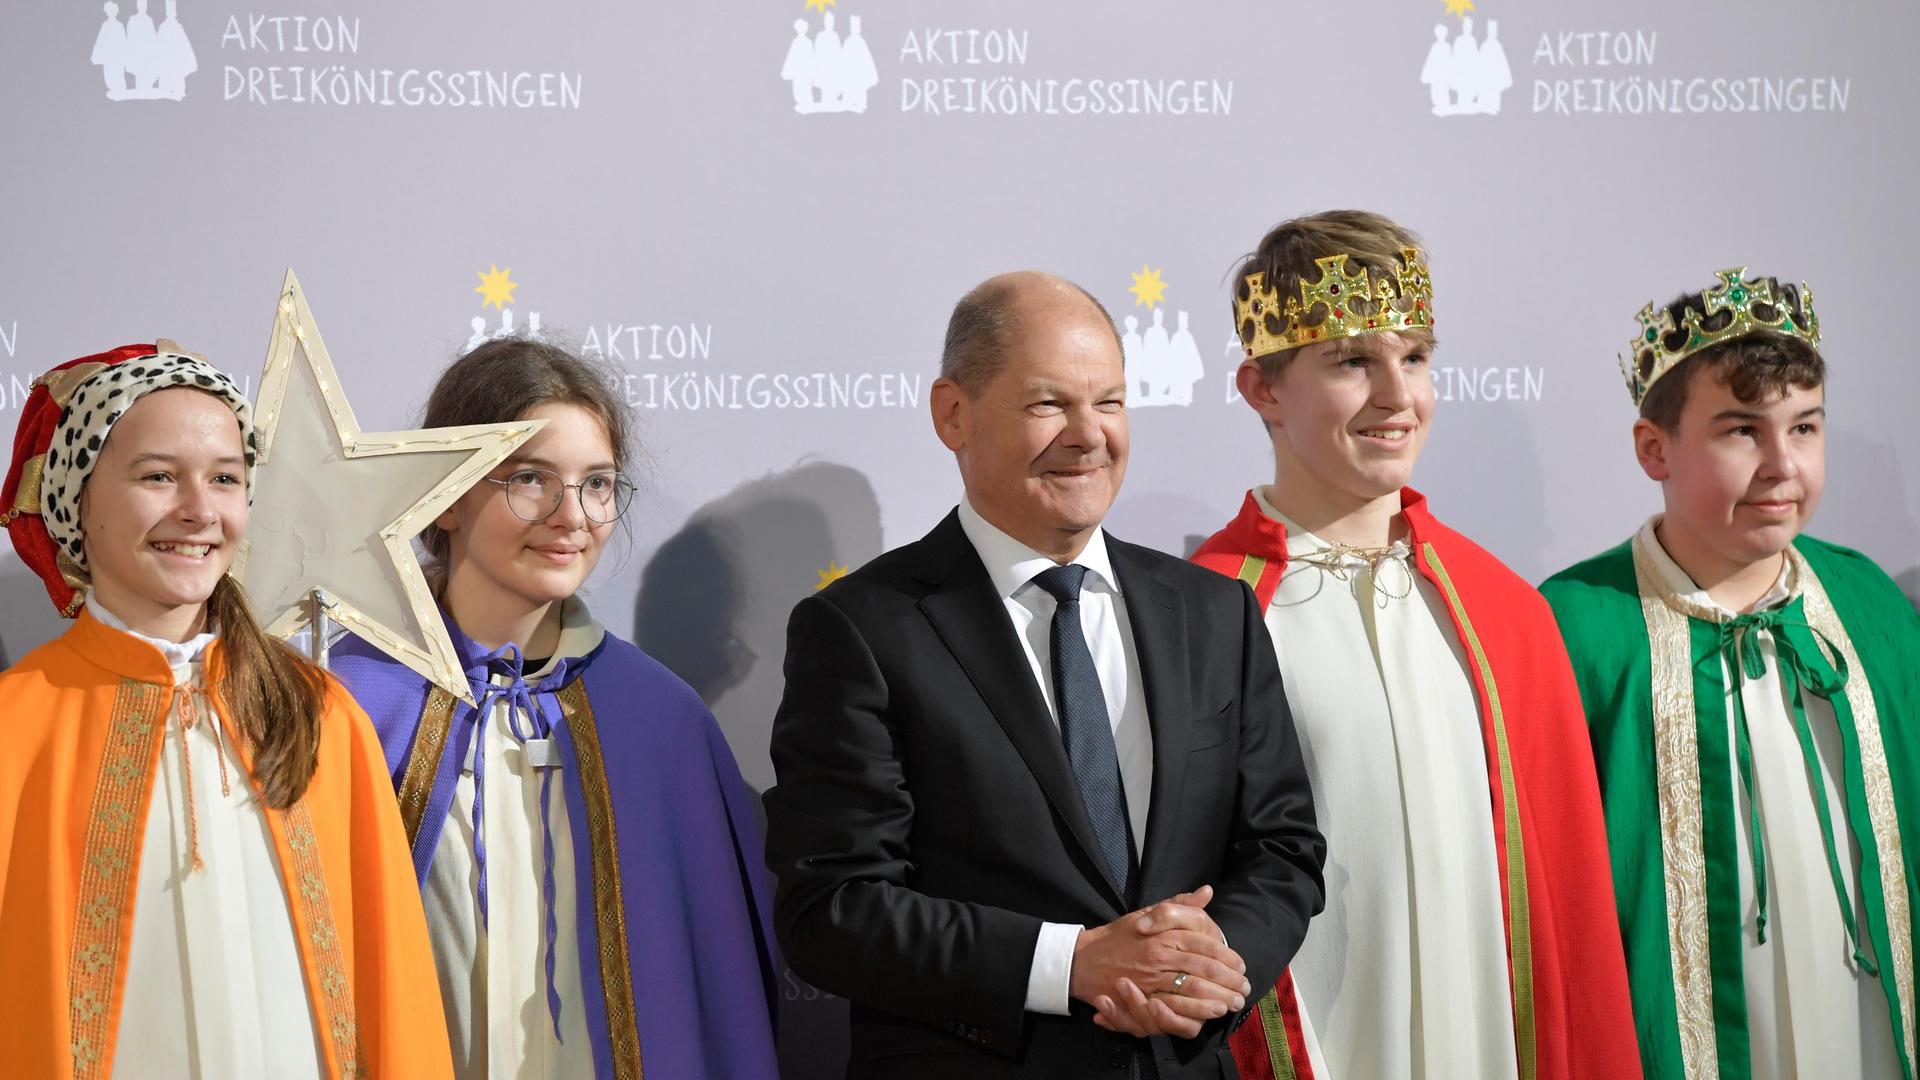 Bundeskanzler Olaf Scholz (SPD) empfing am Donnerstag (05.01.2023) die Sternsinger im Berliner Kanzleramt. Vor allem in katholischen Regionen ist das Sternsingen weit verbreitet, aber oft beteiligen sich auch evangelische Kirchengemeinden. 